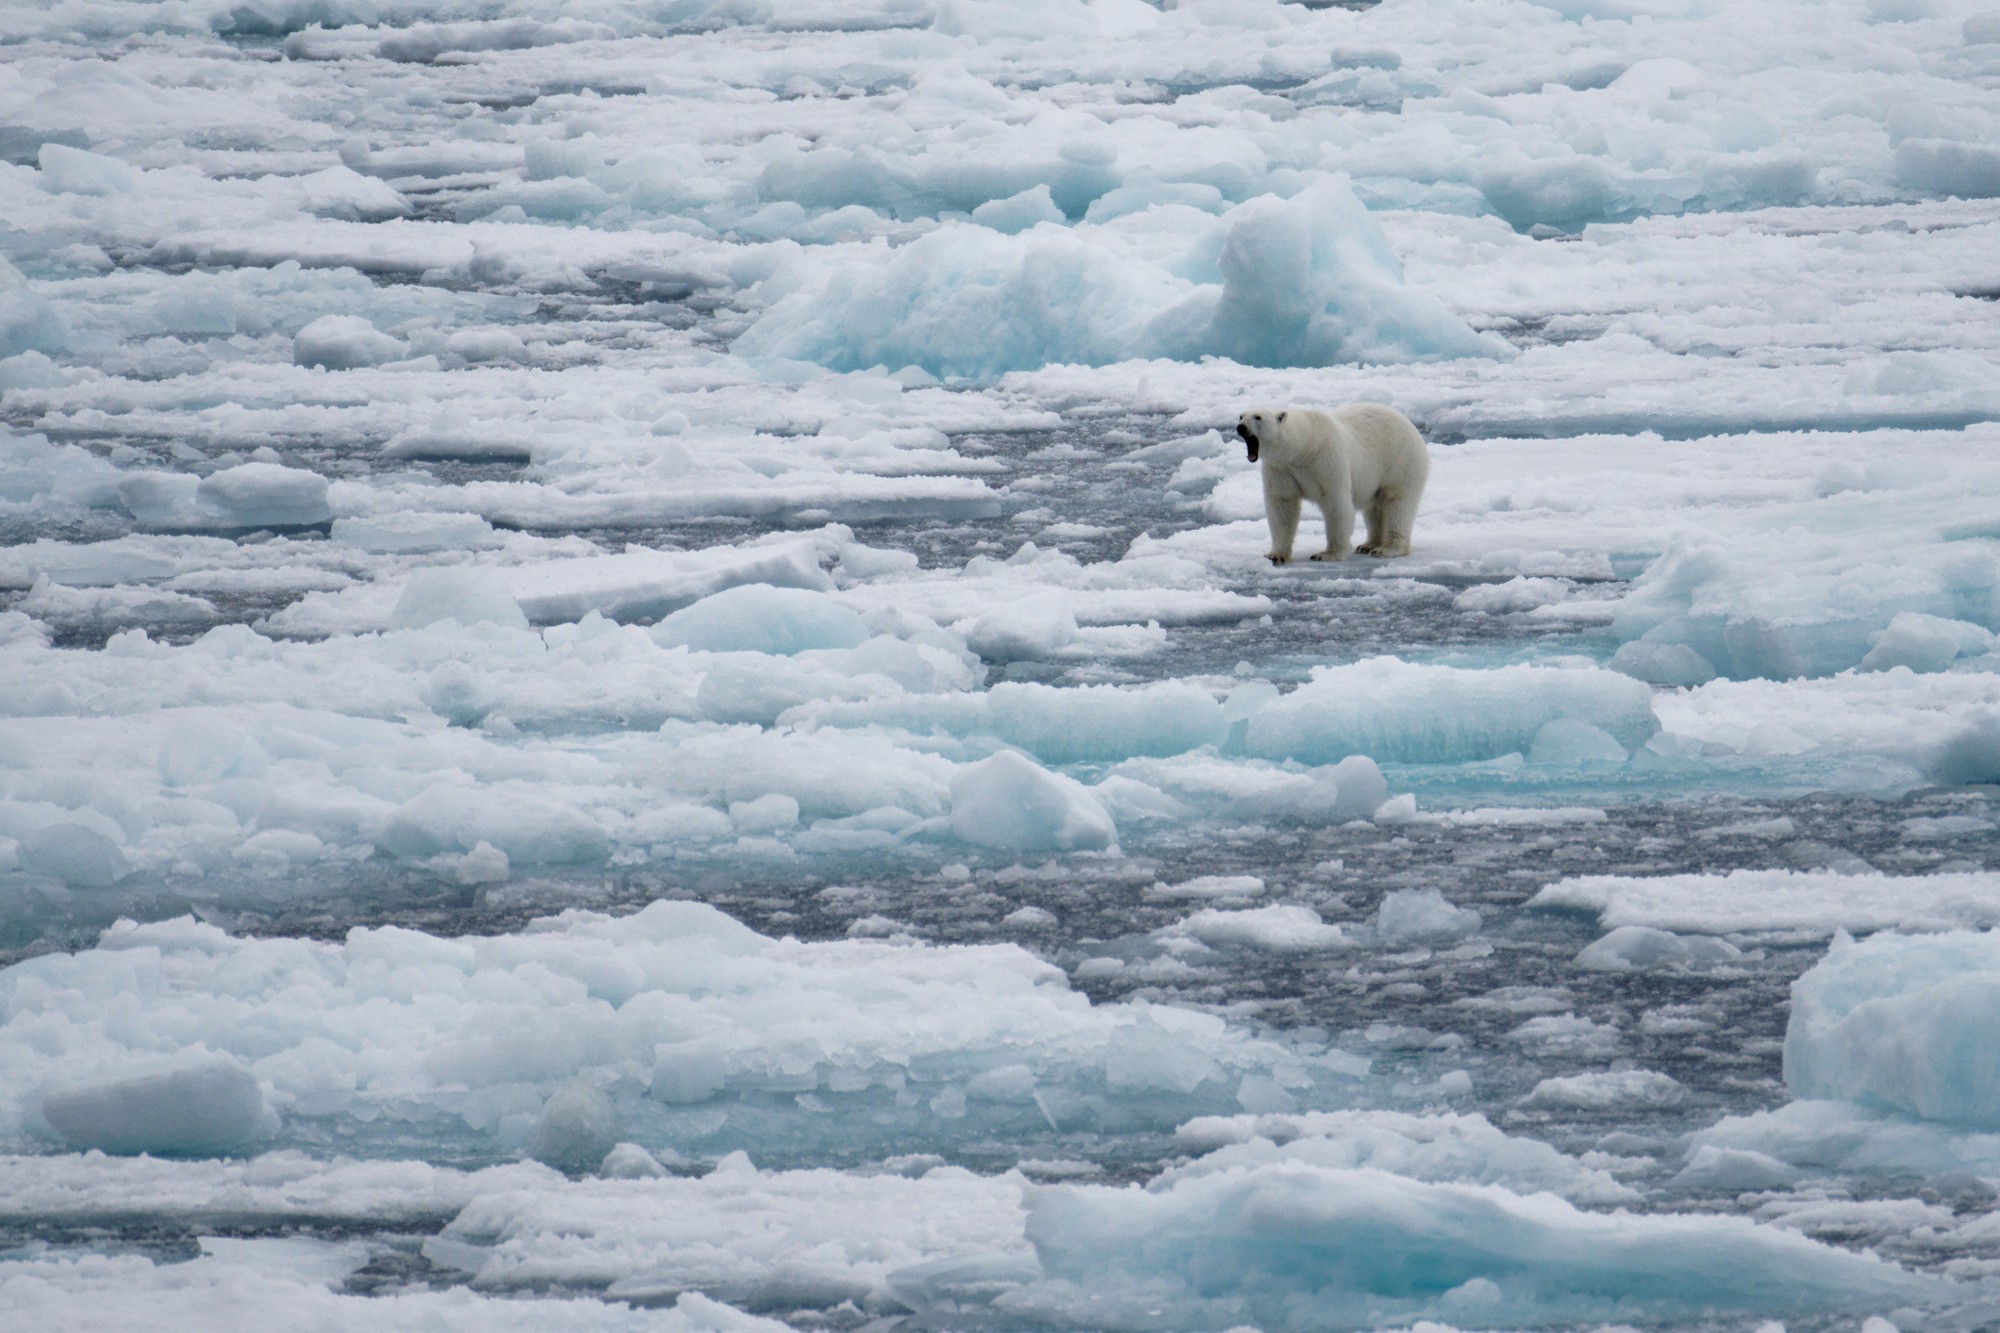 Los osos utilizan el hielo marino para cazar su alimento. - Foto mlharing/Gettyimages